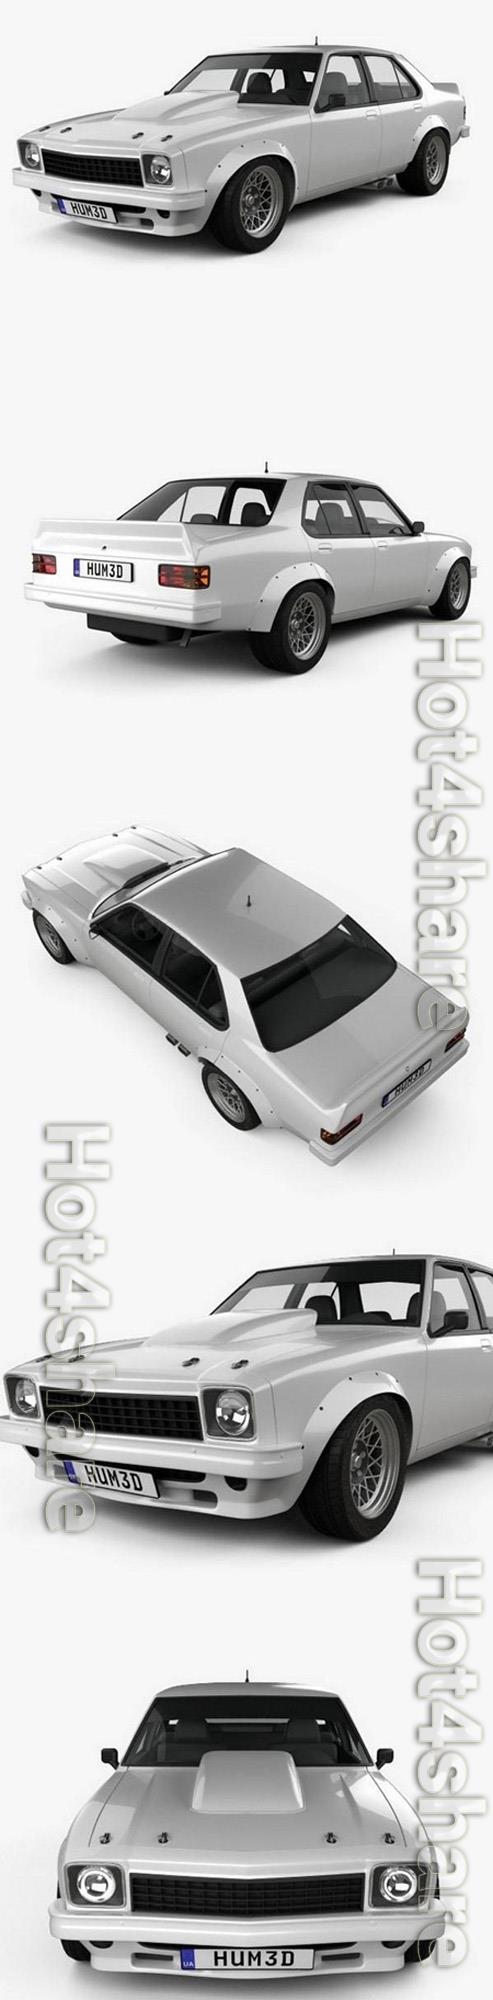 Holden Torana 4-door Race Car 1977 3D Model